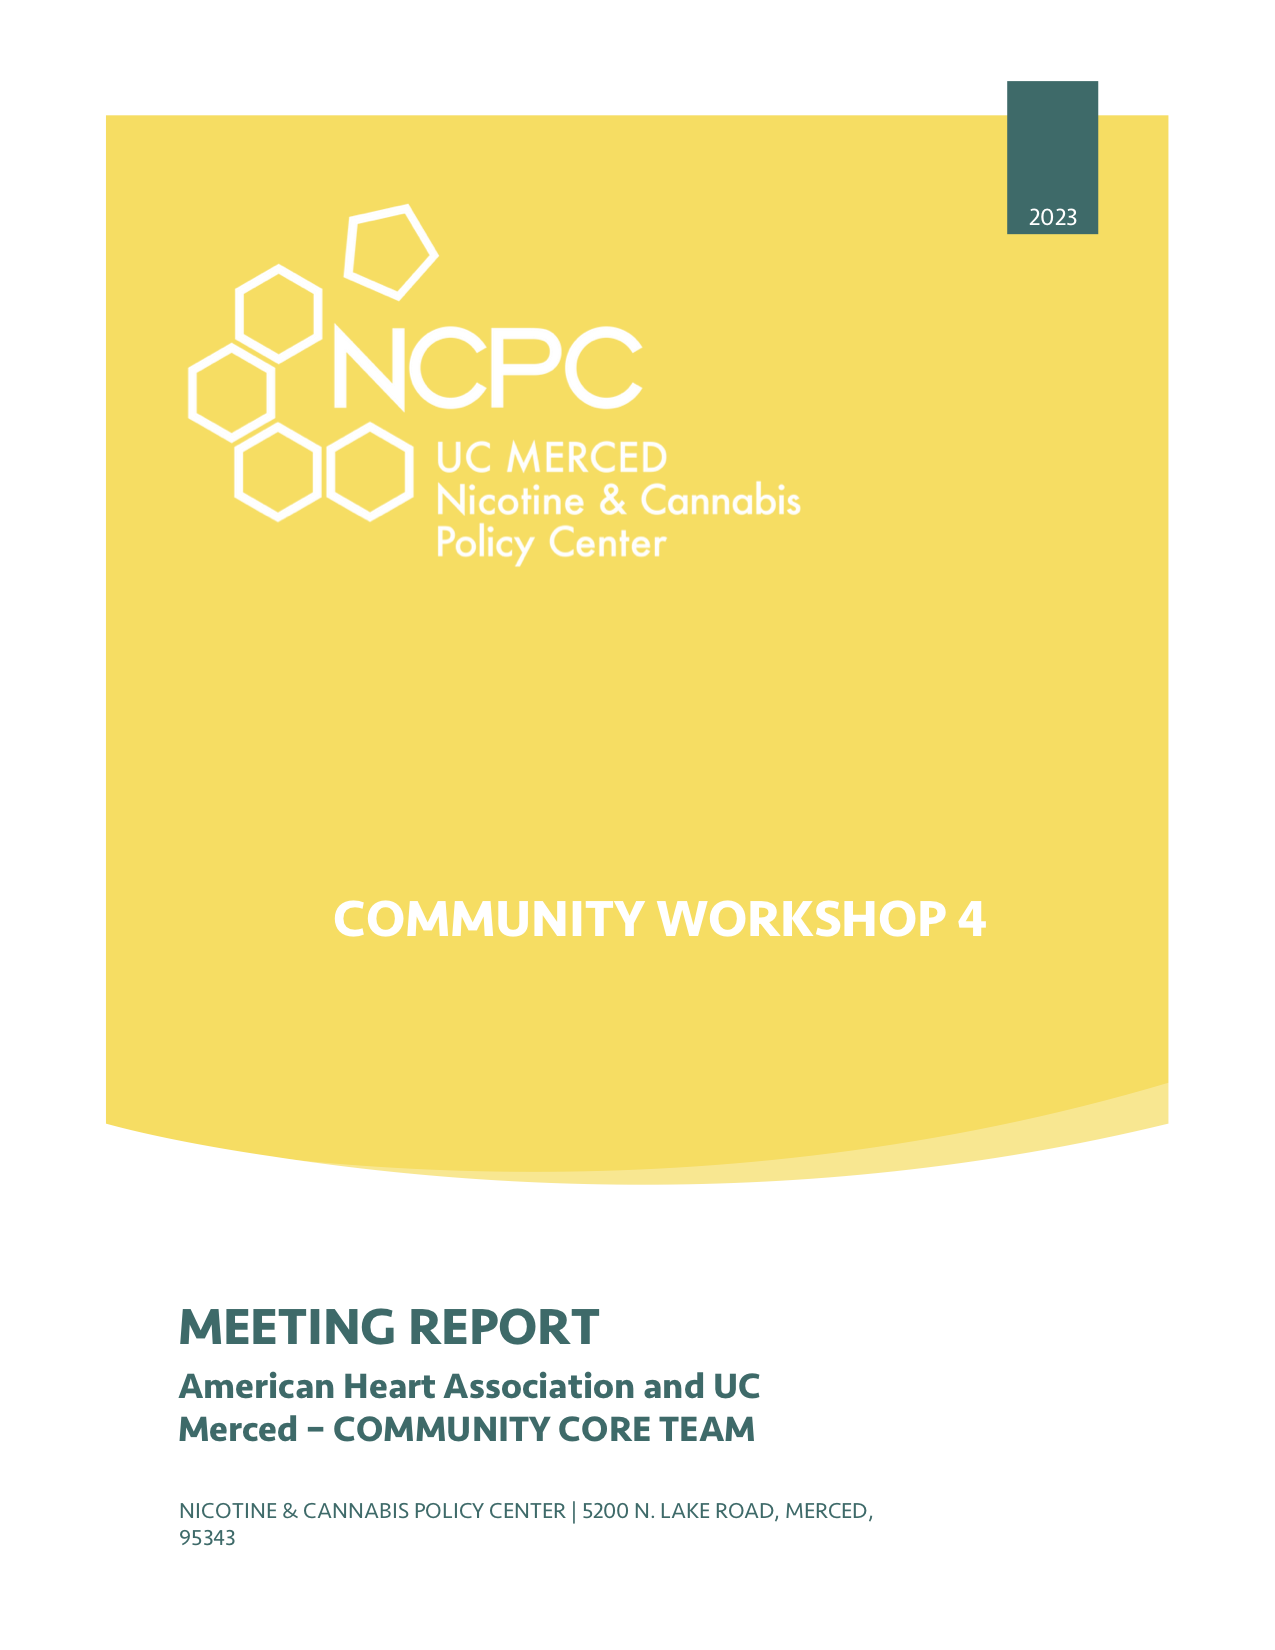 NCPC Community Core Workshop 4